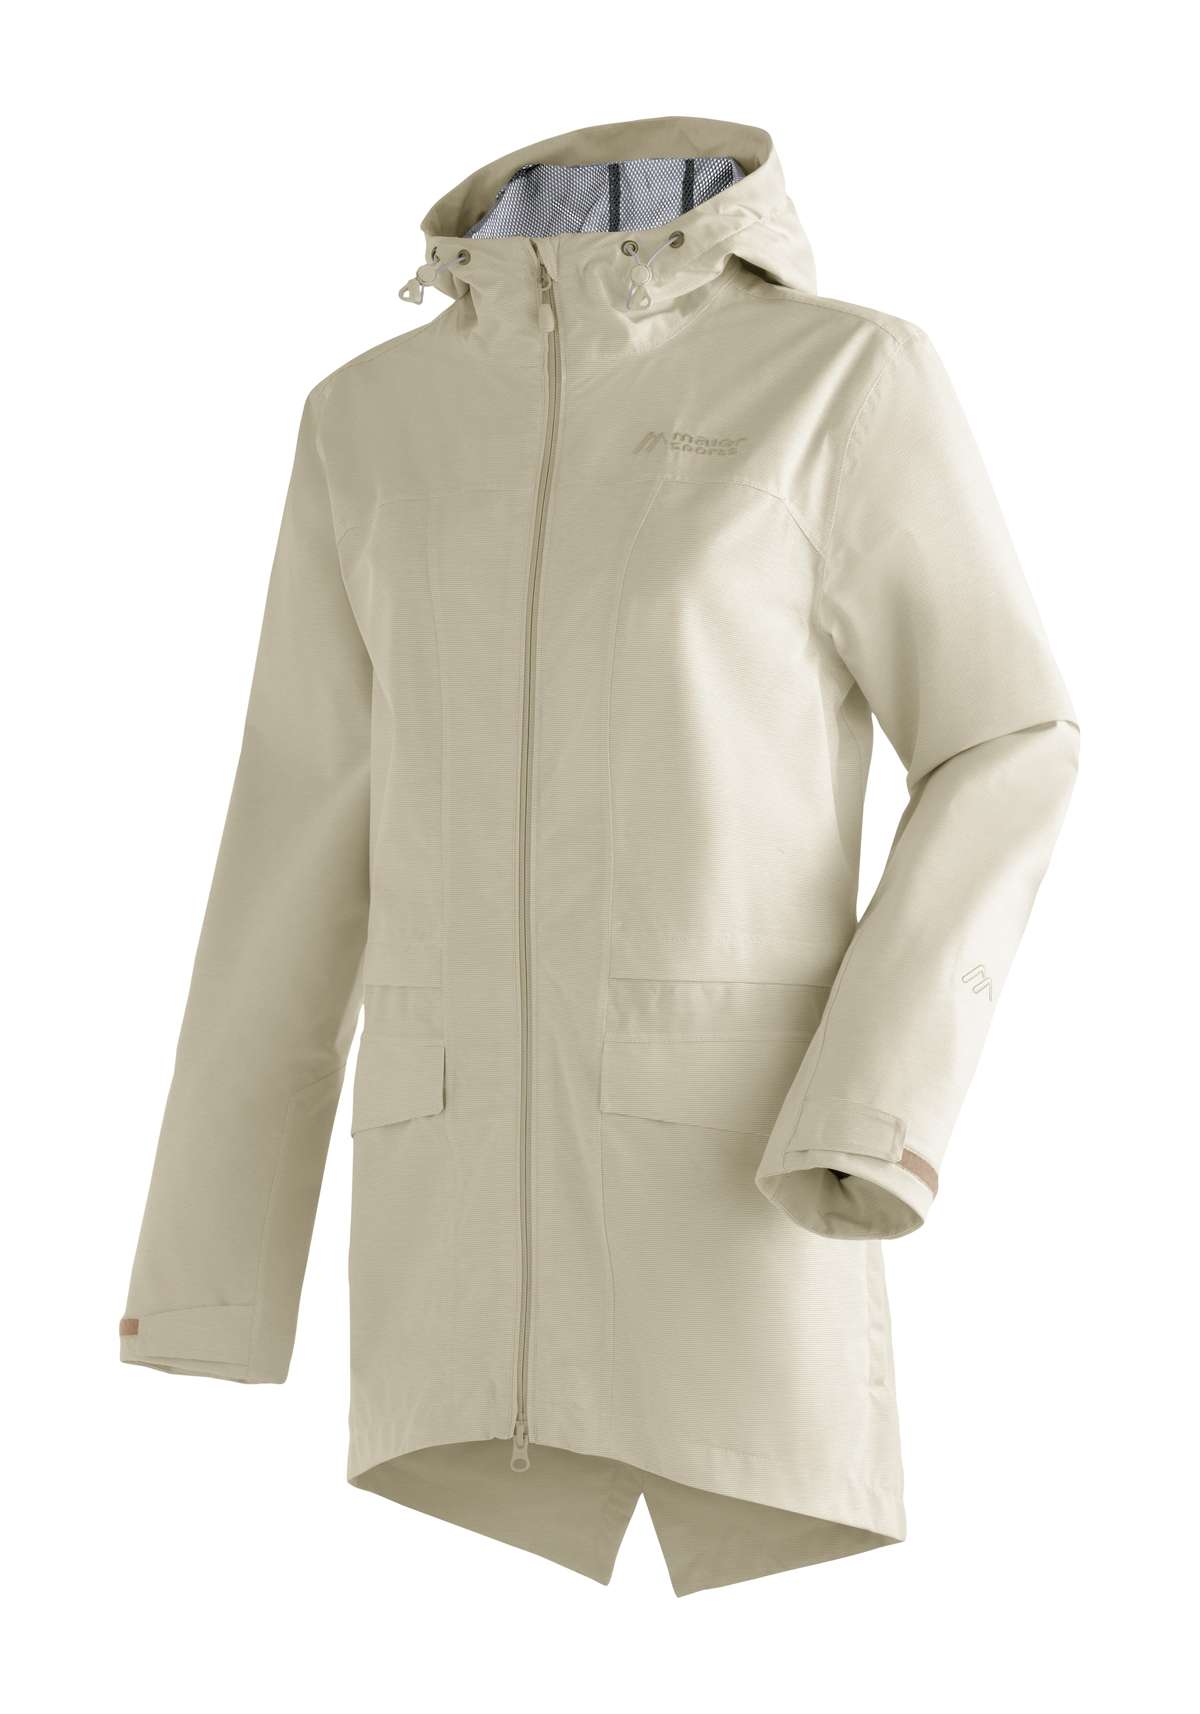 Уличная куртка, длинная женская походная куртка с капюшоном, водонепроницаемое пальто.